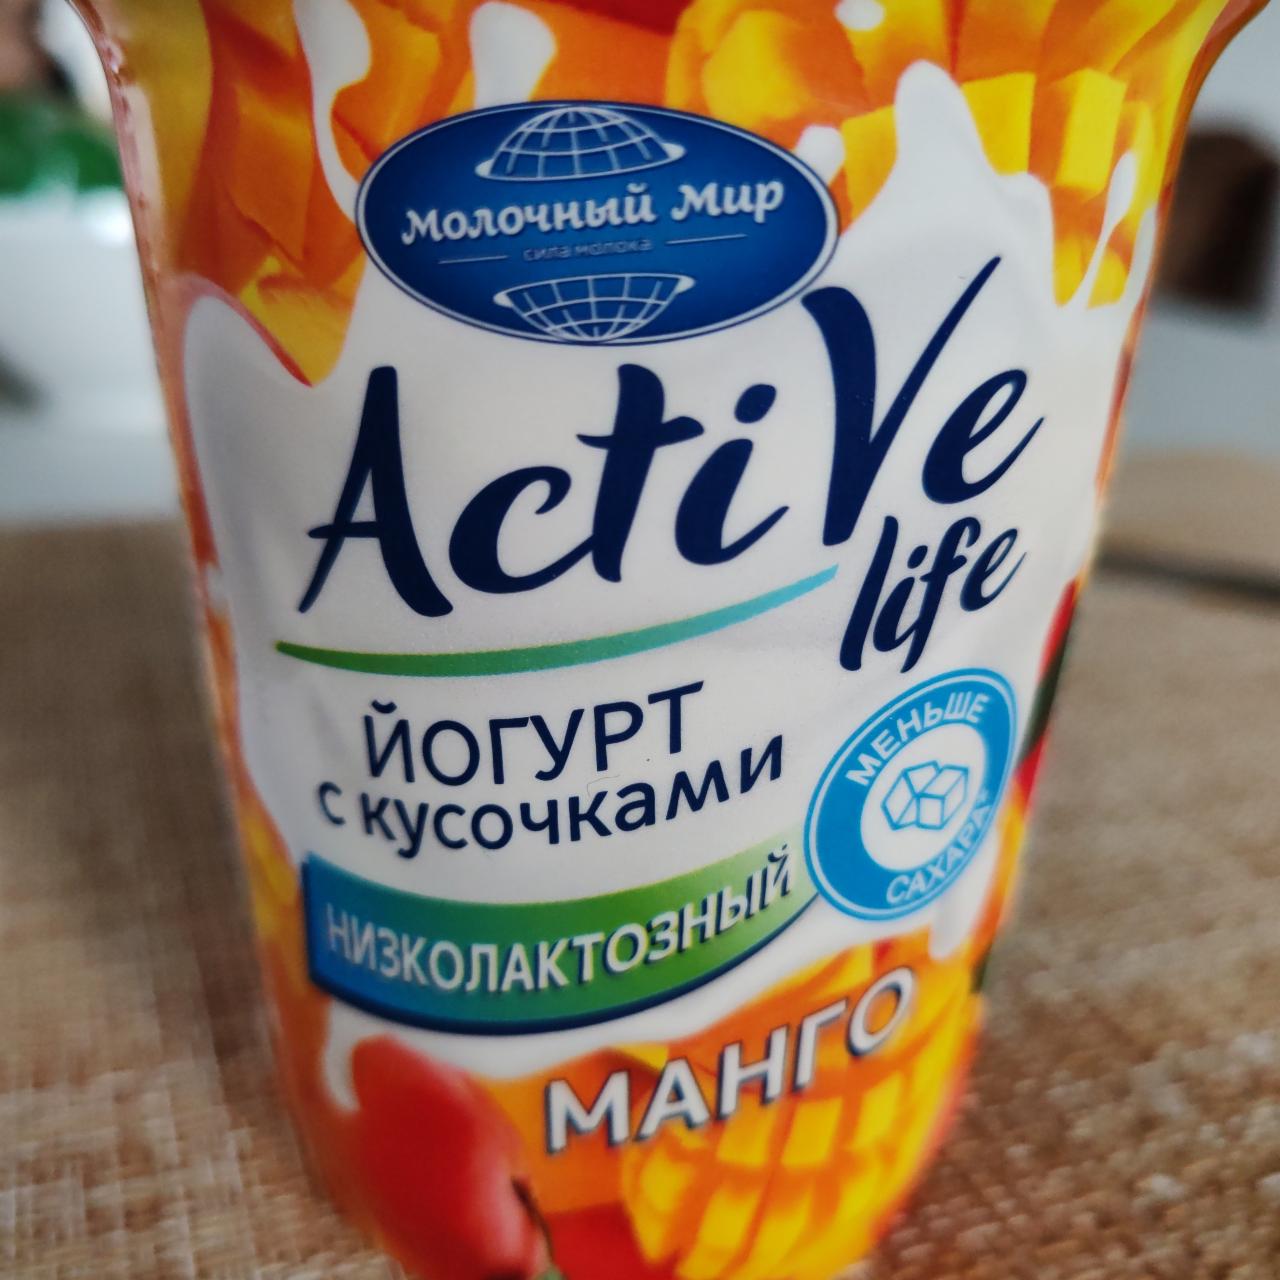 Фото - Йогурт с кусочками низколактозный манго Active Life Молочный мир